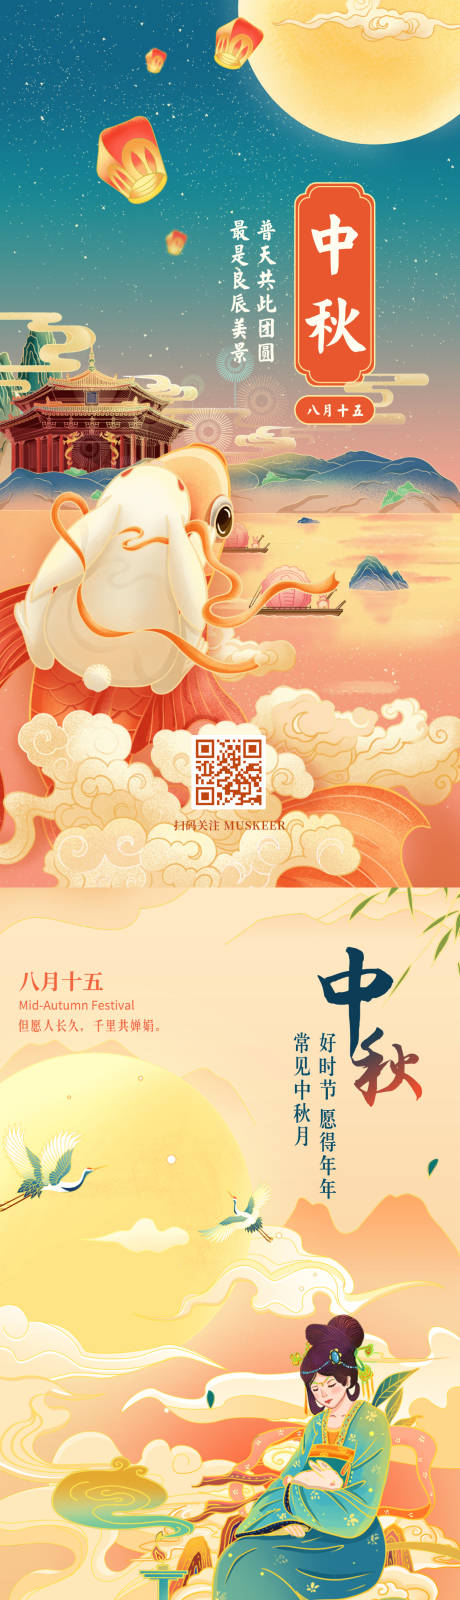 中秋节系列海报